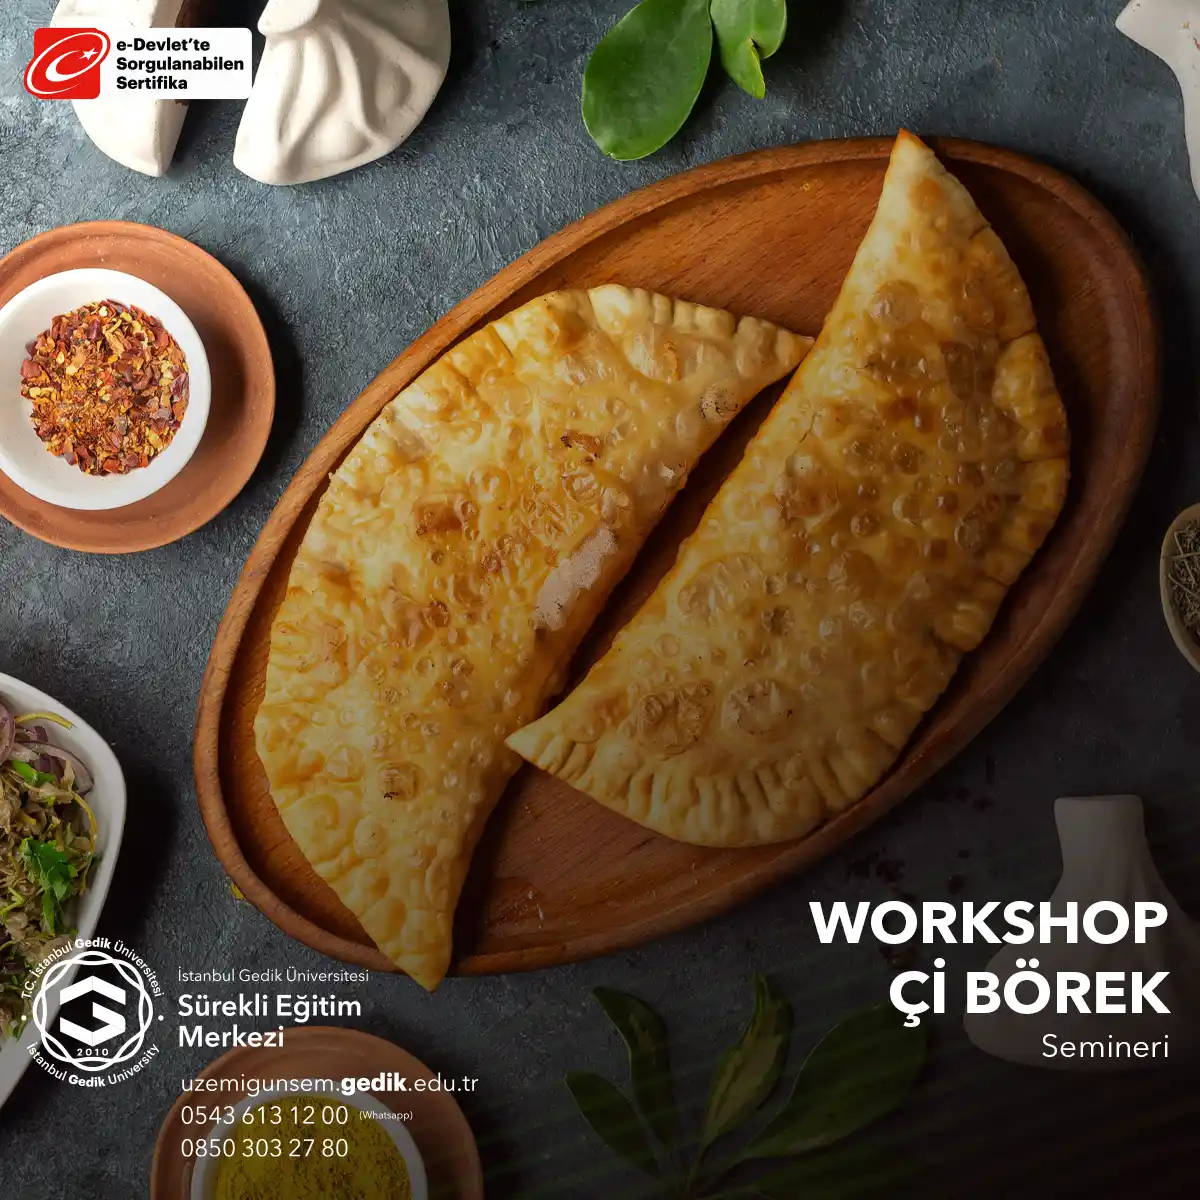 "Çi Börek Workshop," geleneksel bir Türk mutfağı lezzeti olan "Çi Börek" yapma seminerini ifade eder.